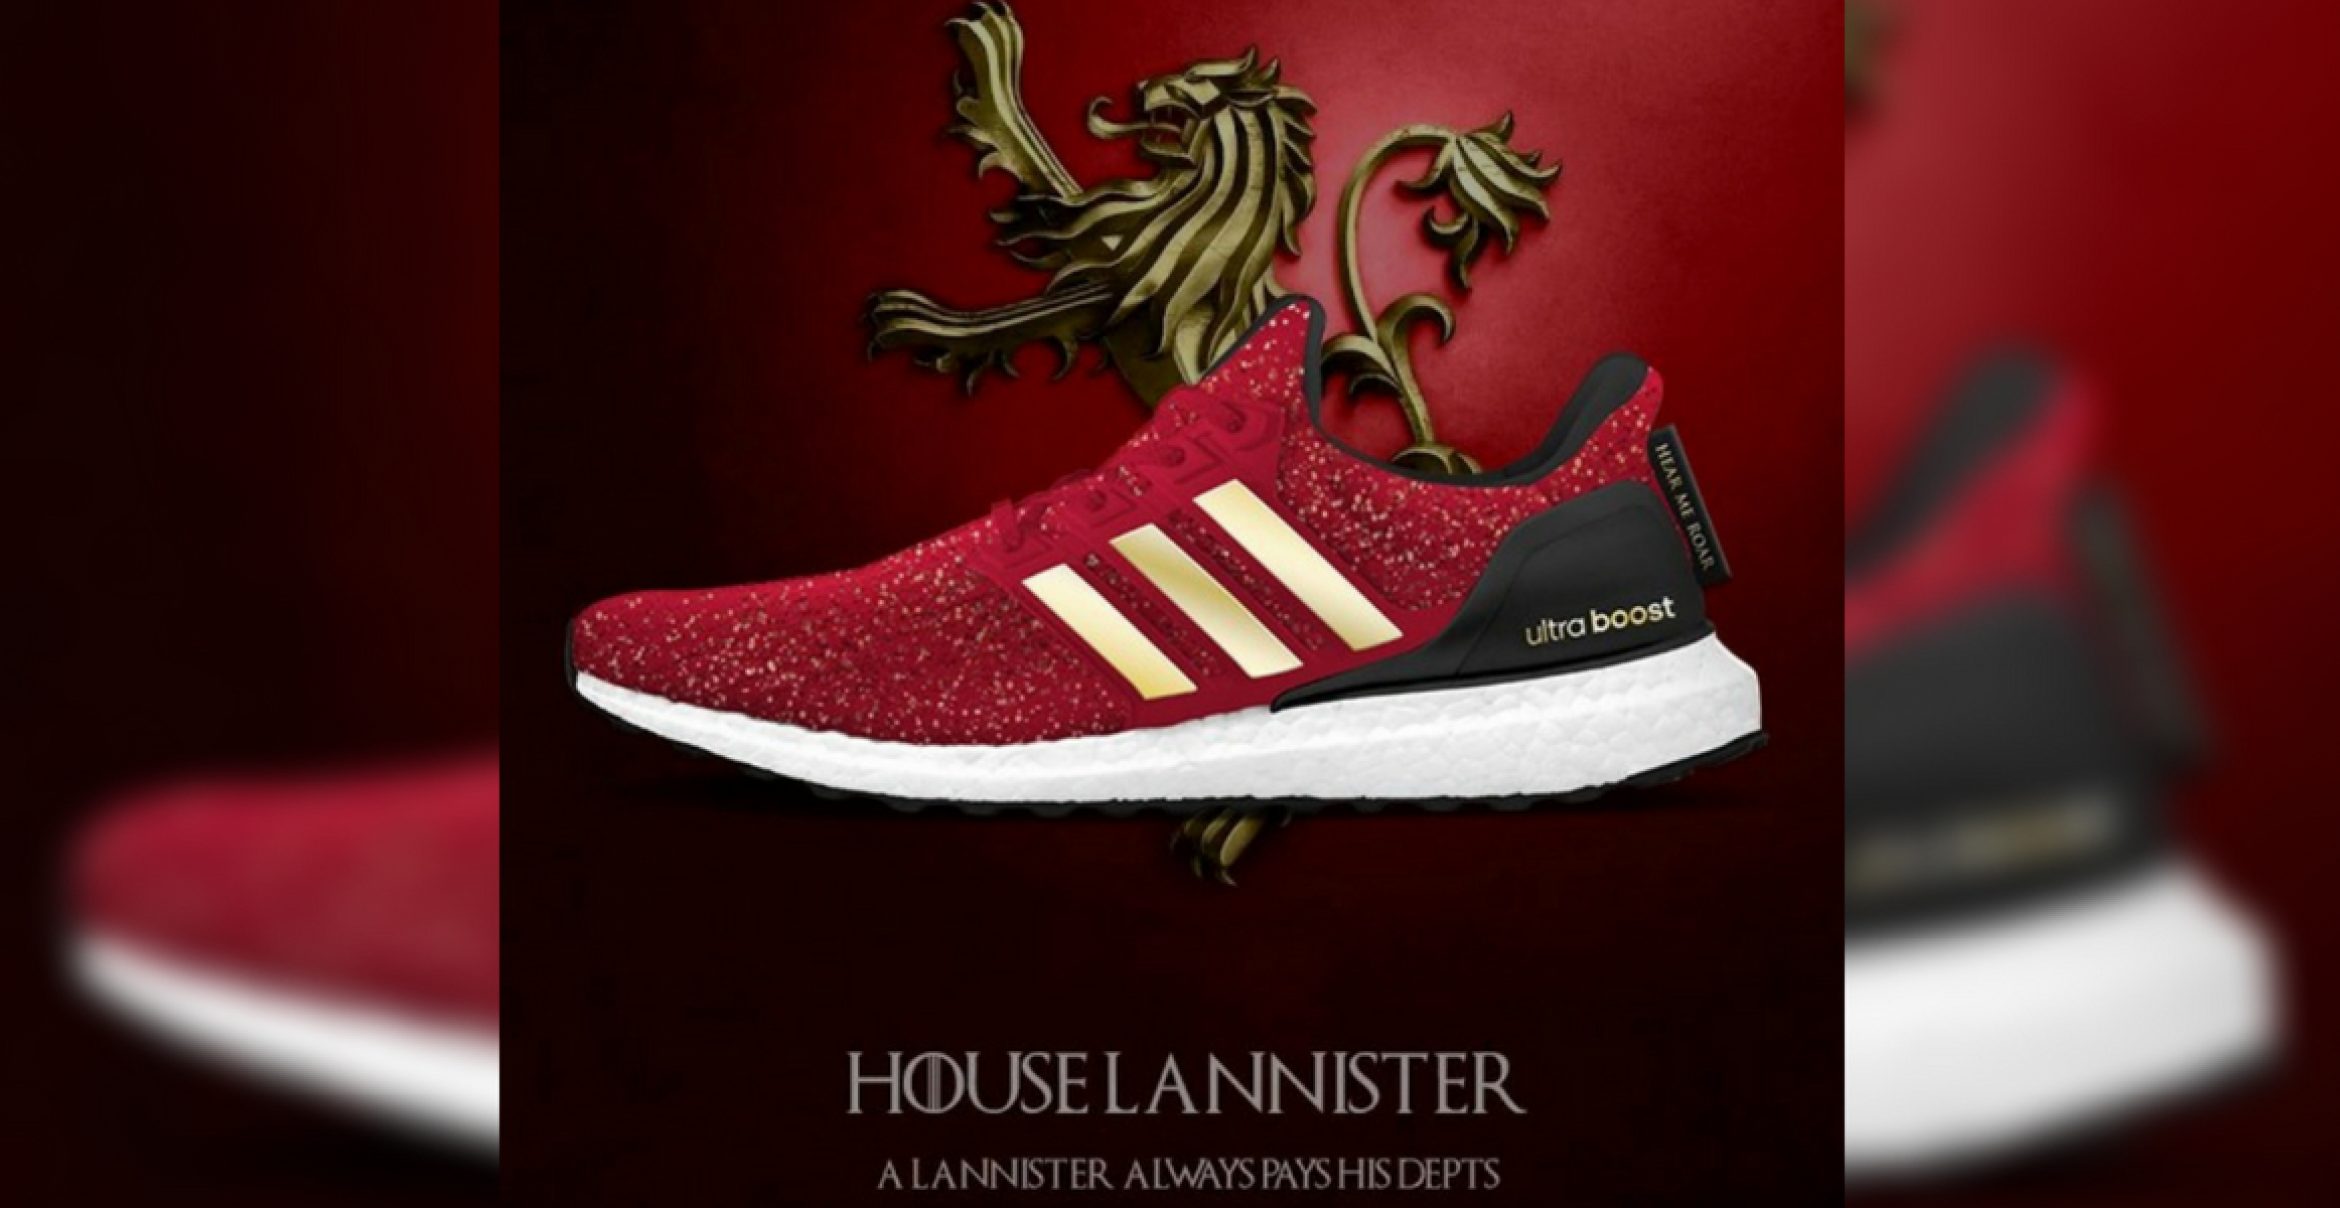 Adidas plant offenbar Sneaker-Kollektion zum Serienfinale von Game of Thrones